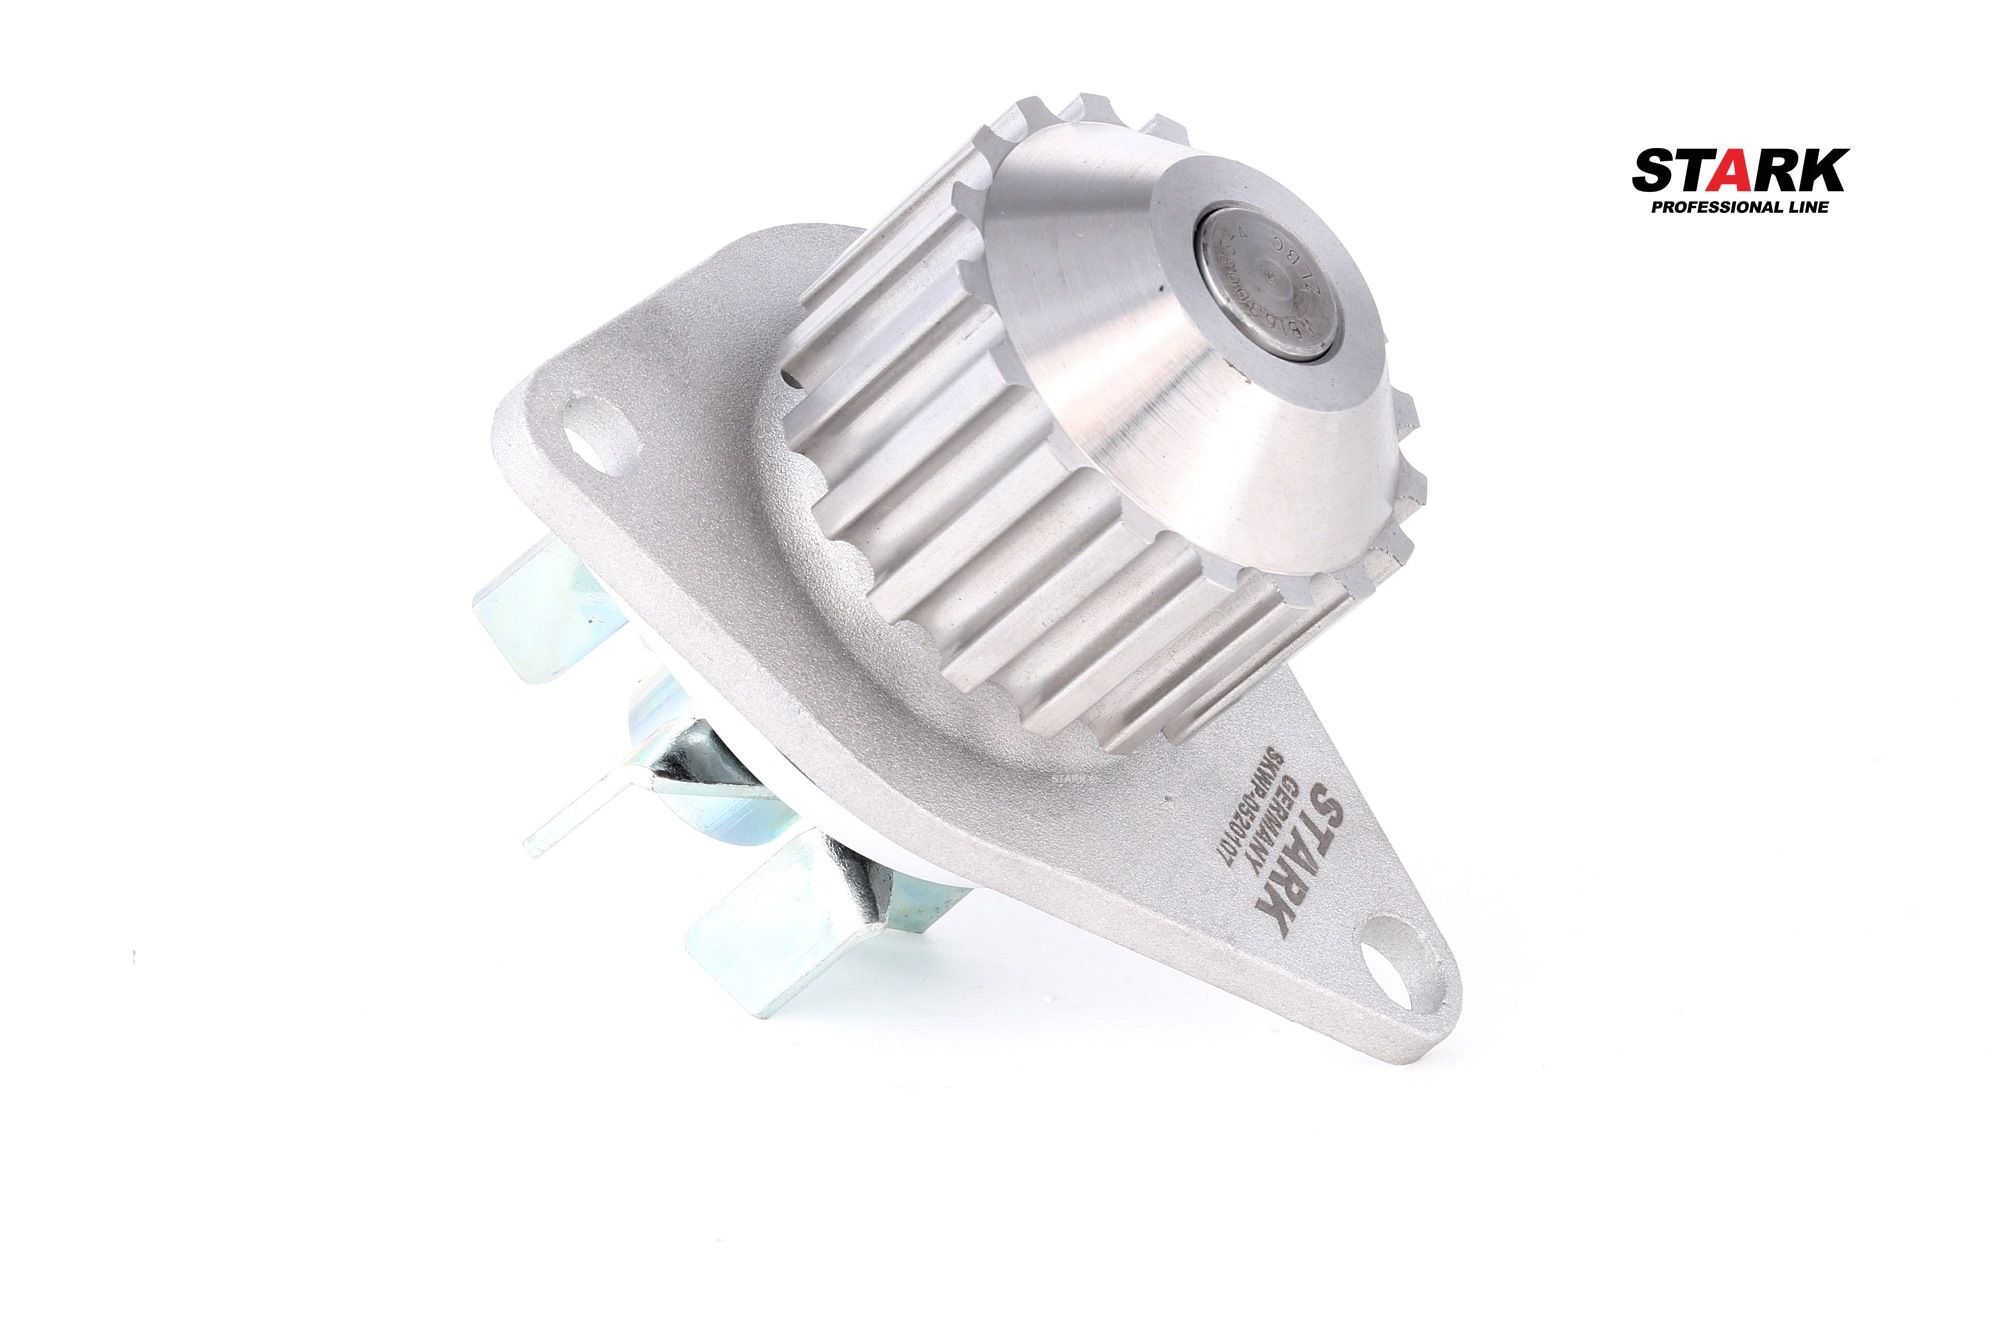 STARK Kühlmittelpumpe SKWP-0520107 Zähnez.: 18, mit Dichtung, mechanisch, Flügelrad aus Metall